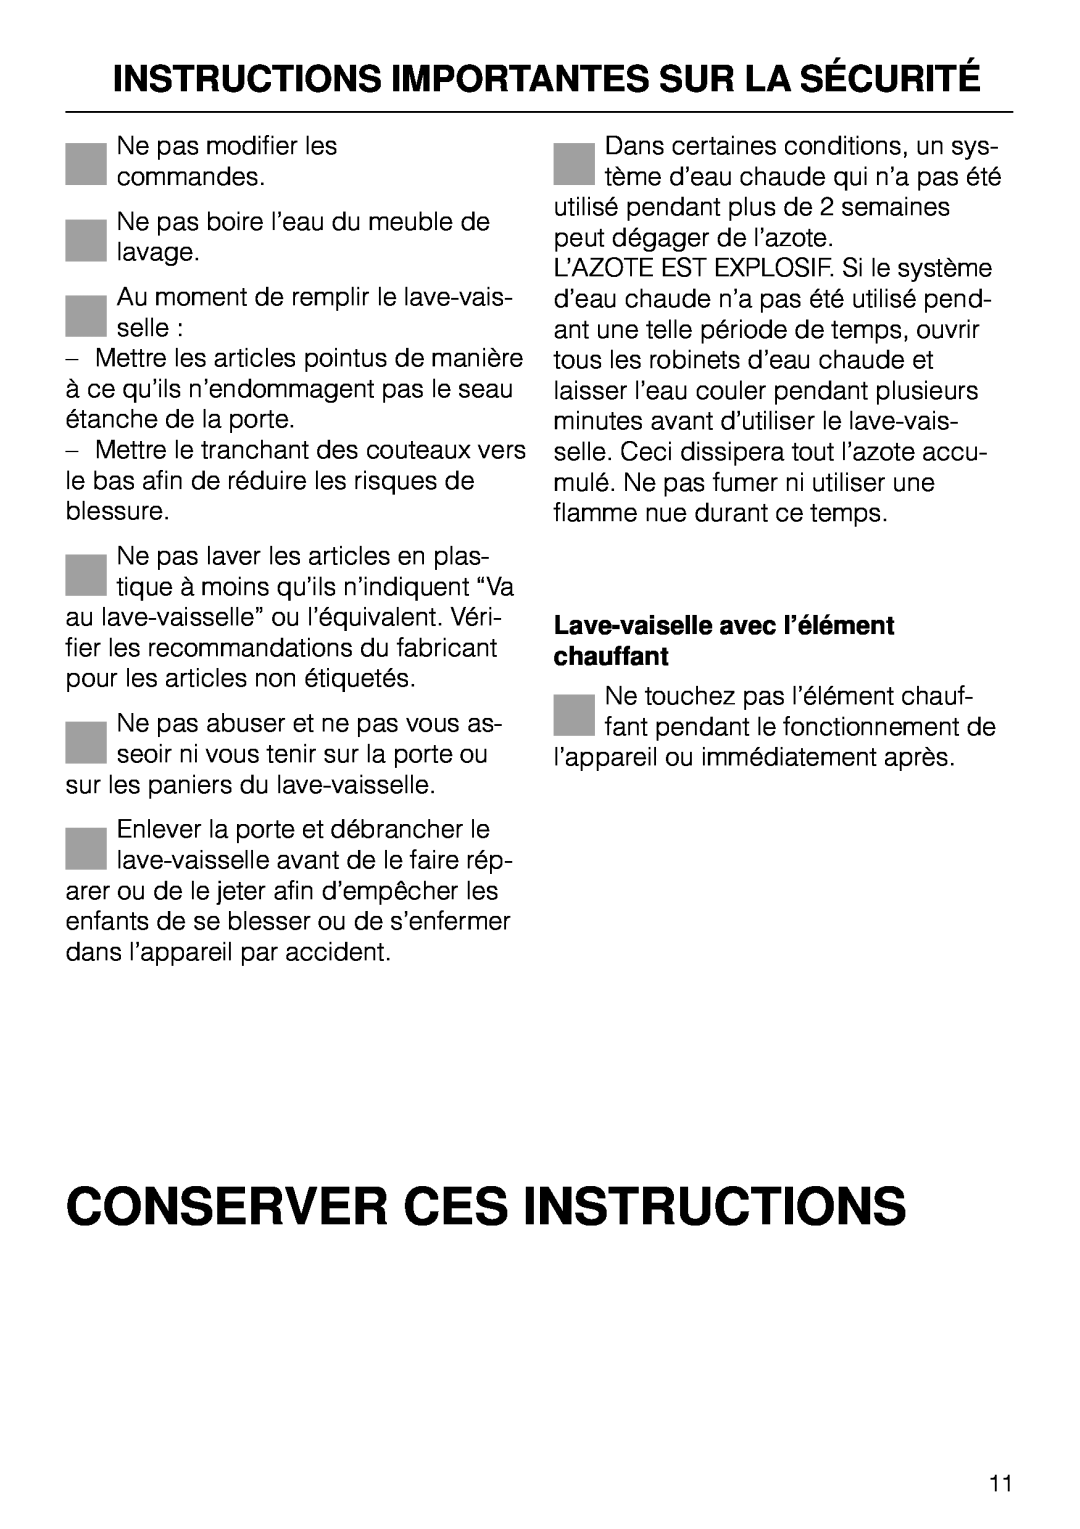 Miele G 890 Conserver Ces Instructions, Instructions Importantes Sur La Sécurité, Lave-vaiselleavec l’élément chauffant 